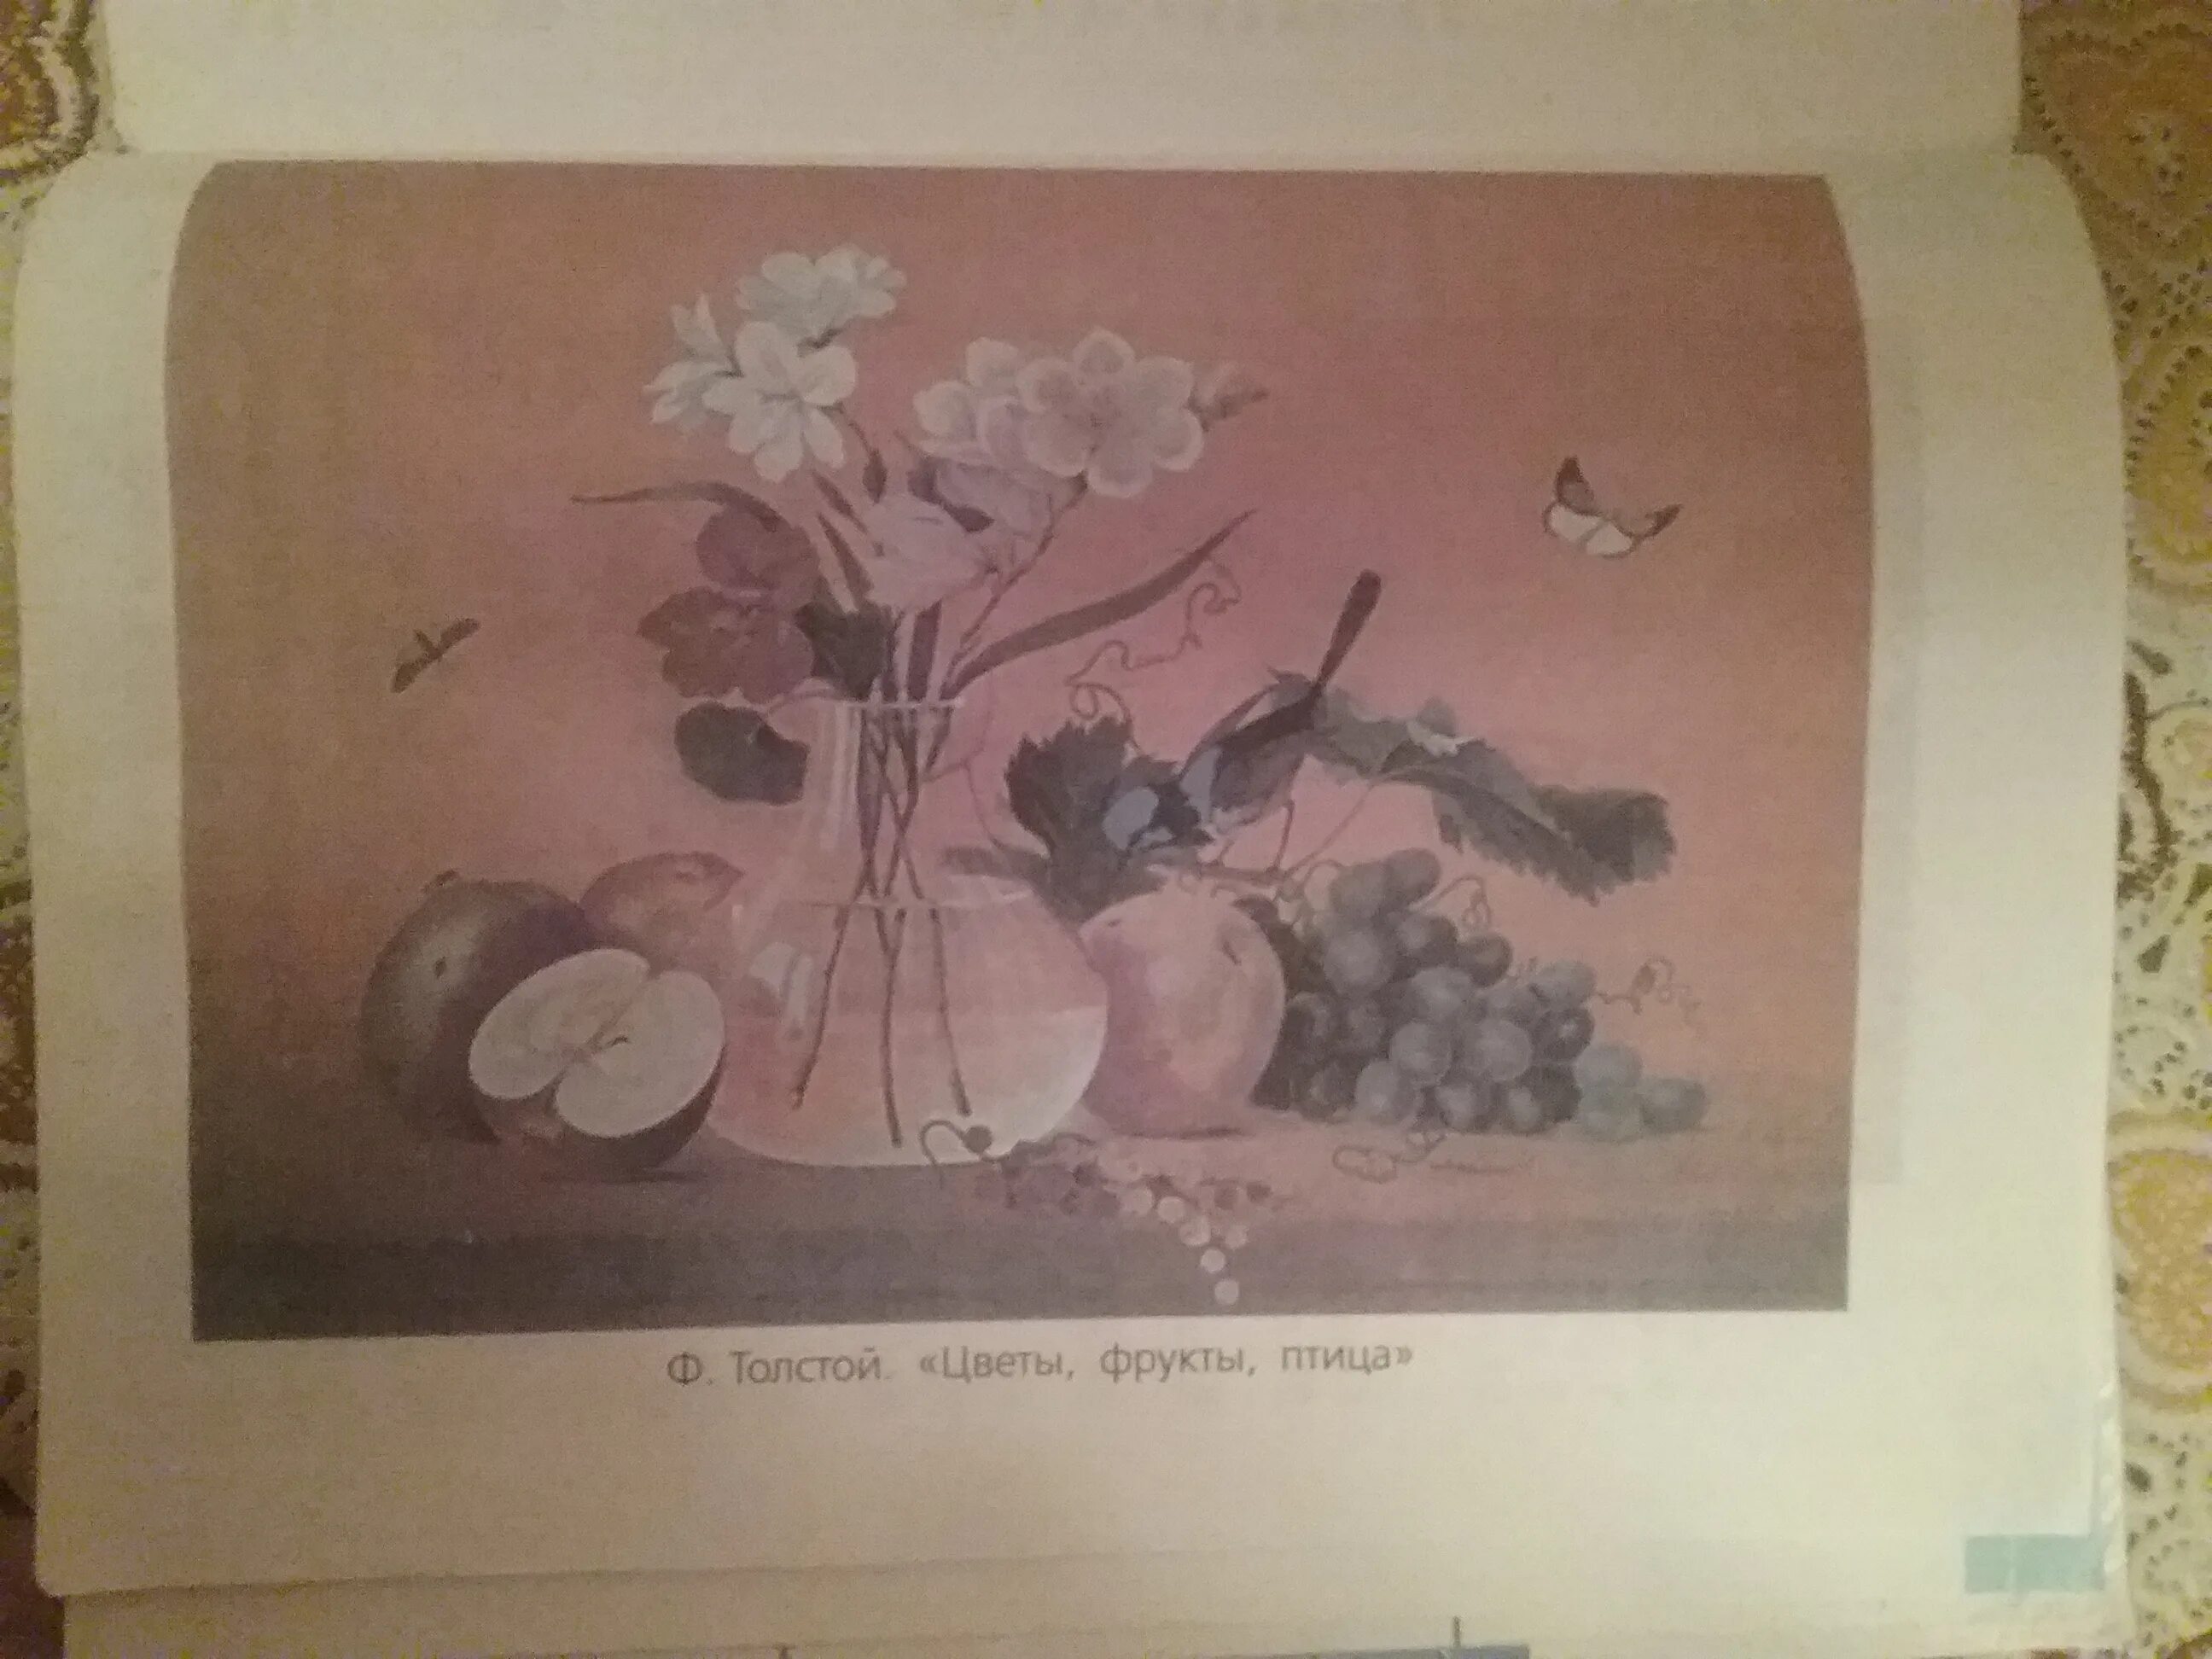 Ф толстой цветы фрукты птица. Картина Толстого цветы фрукты птица. Натюрморт ф.п Толстого цветы фрукты птица.